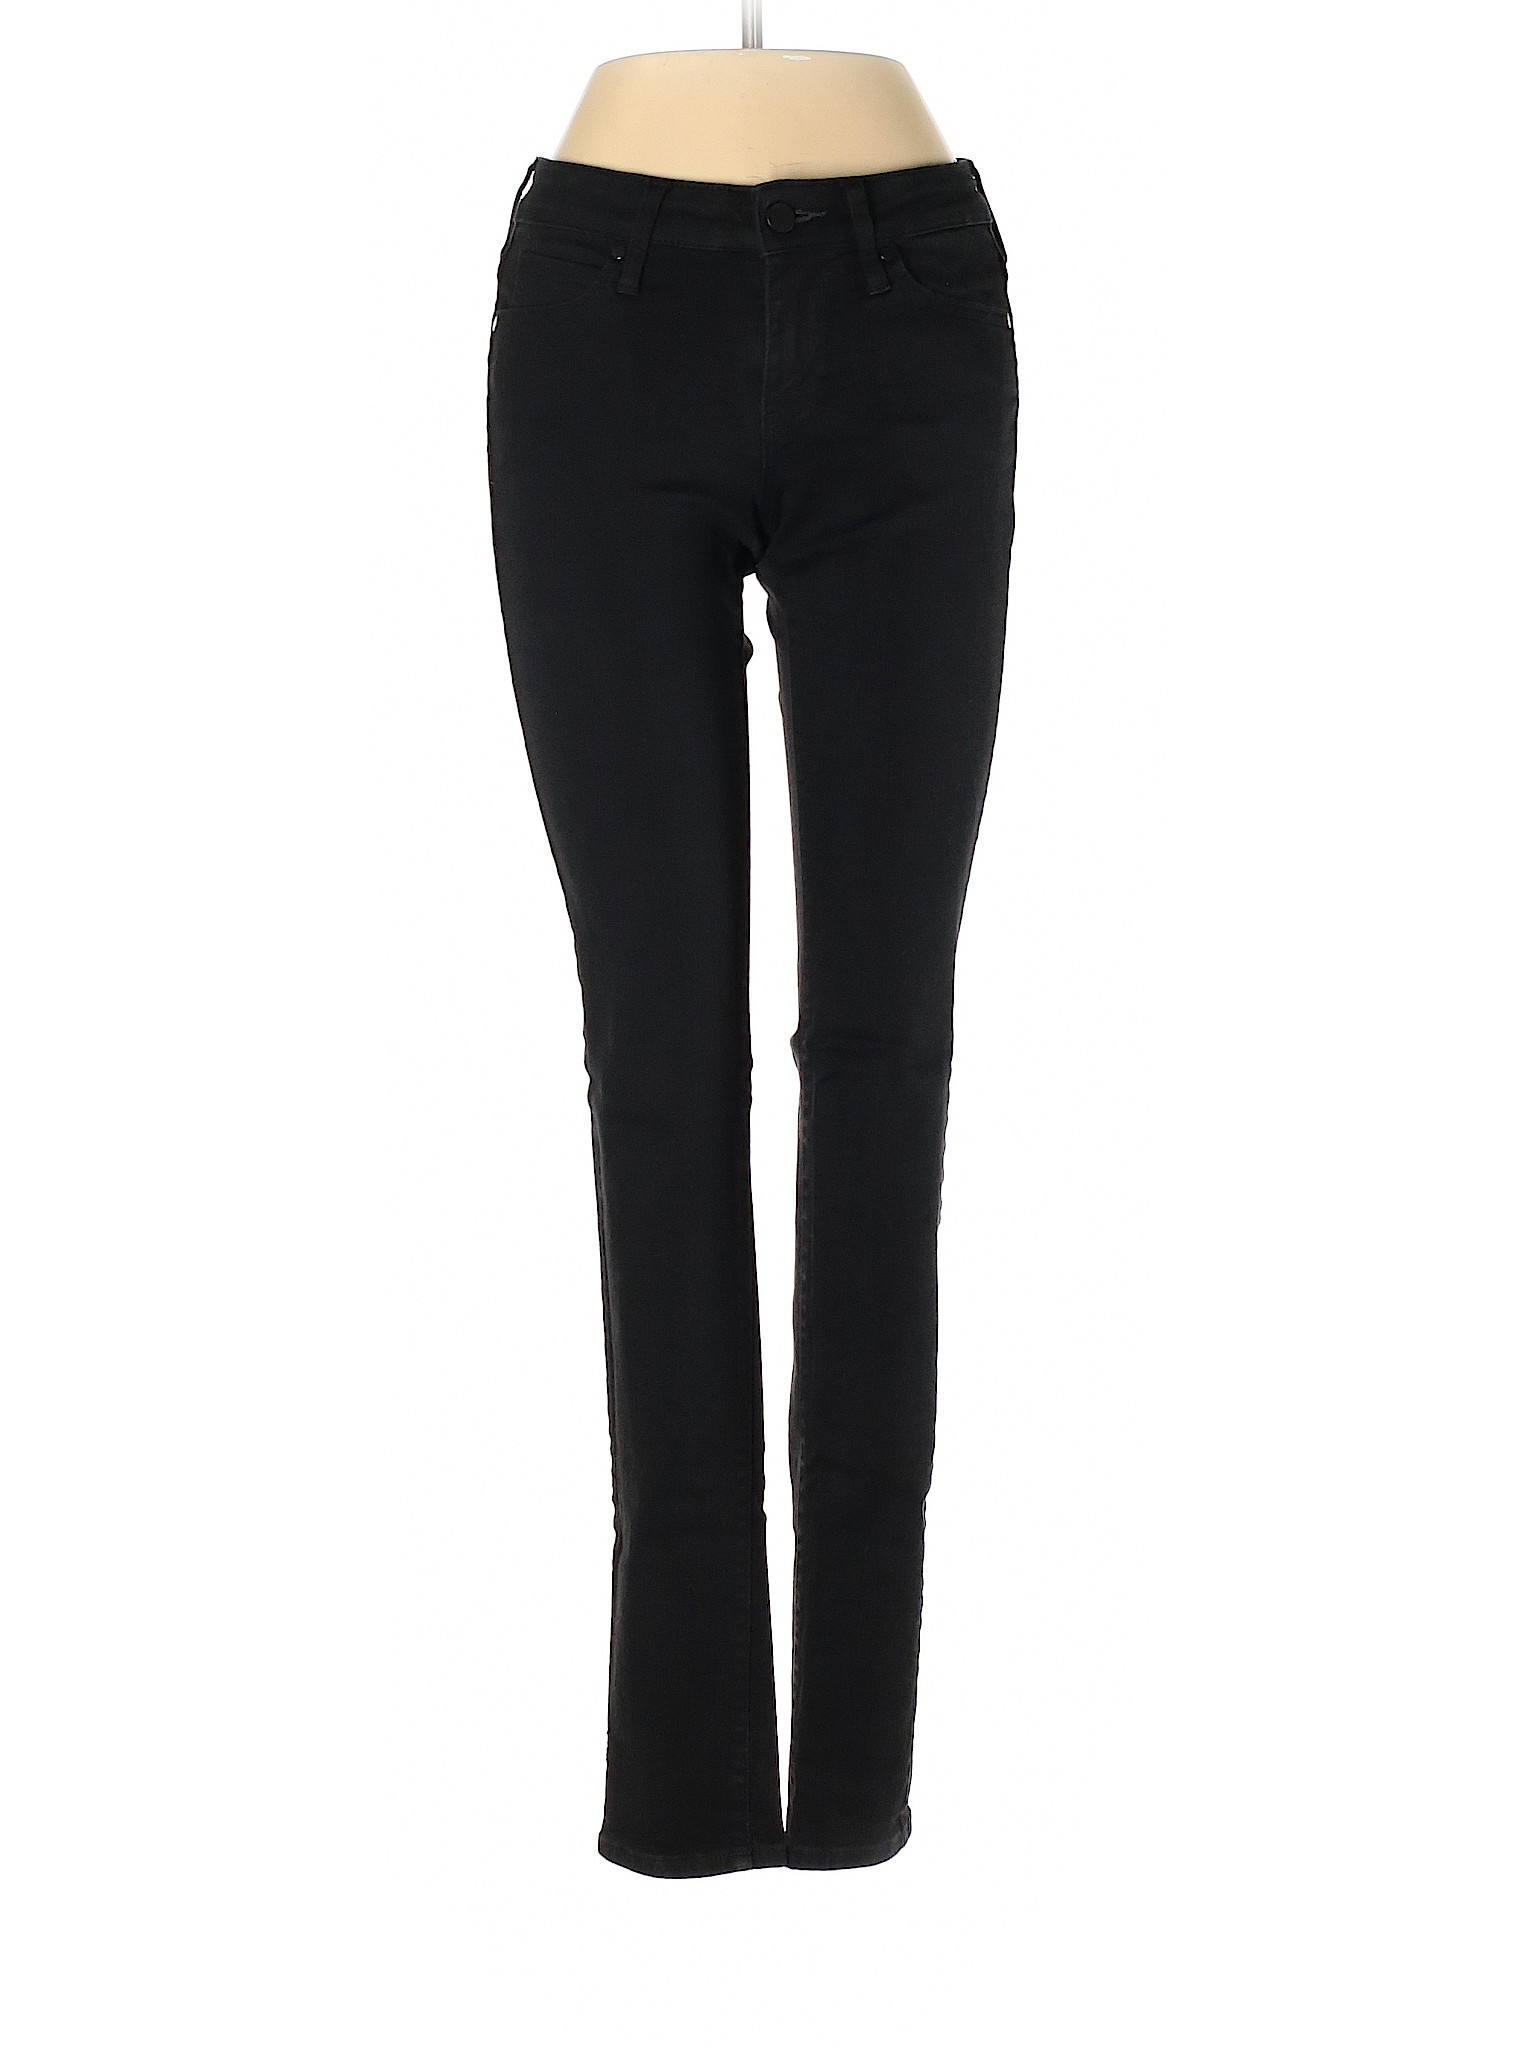 Uniqlo Women Black Jeans 24W | eBay